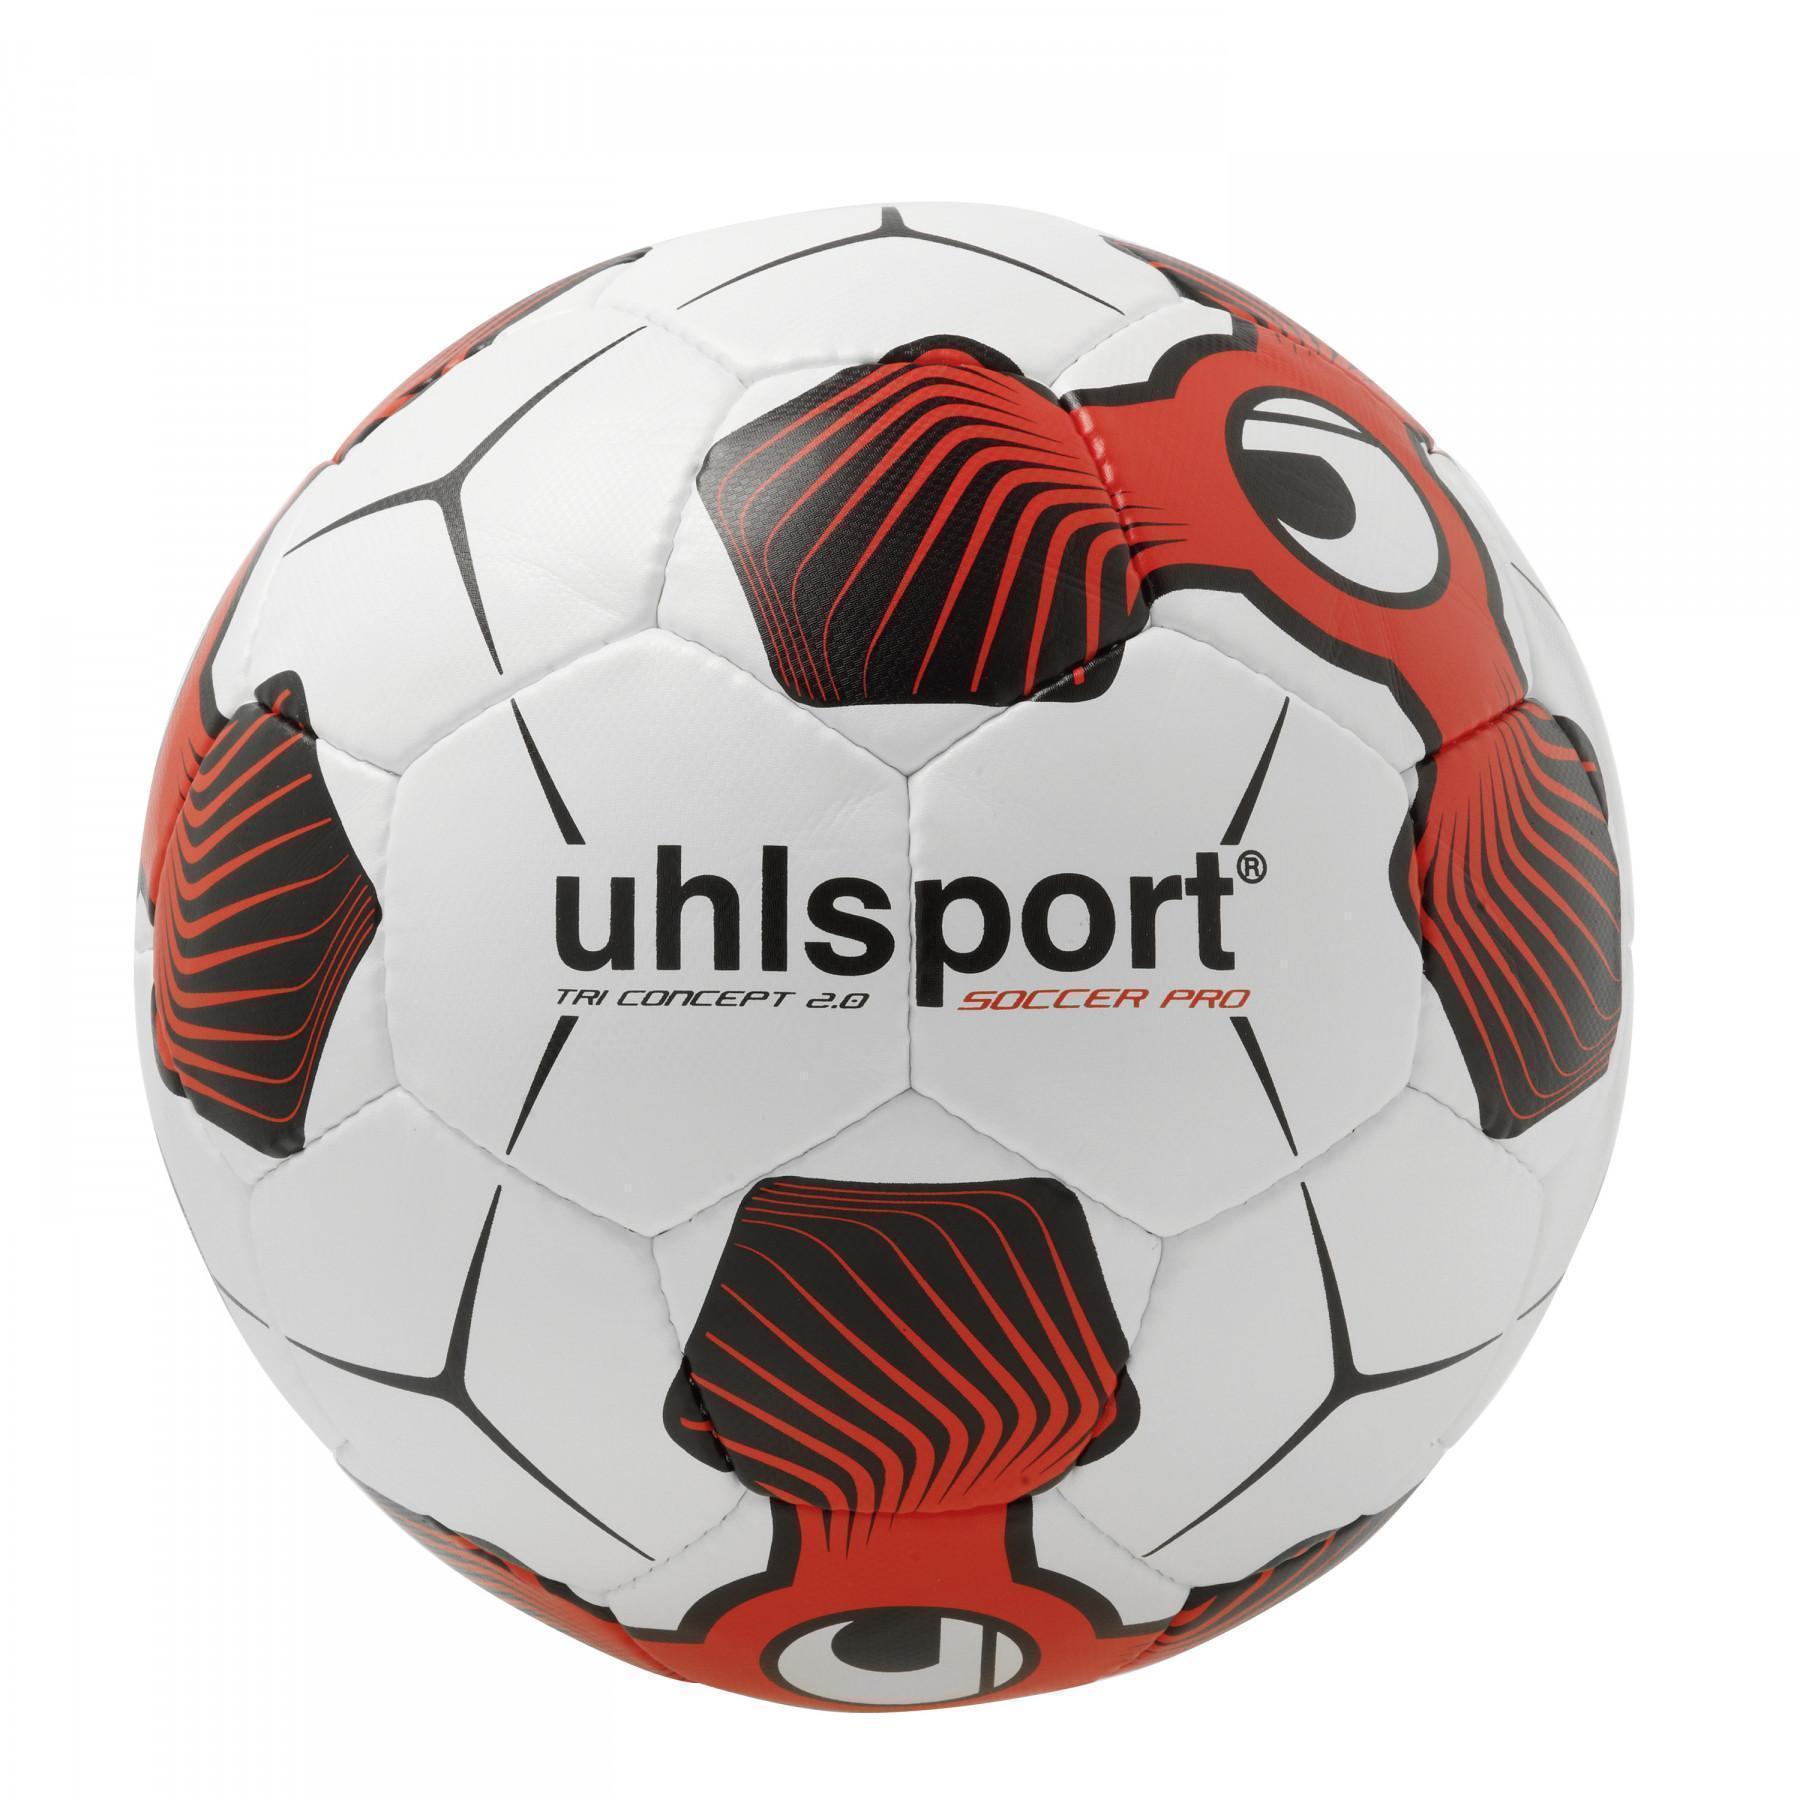 Opakowanie 10 balonów Uhlsport Soccer Pro 2.0